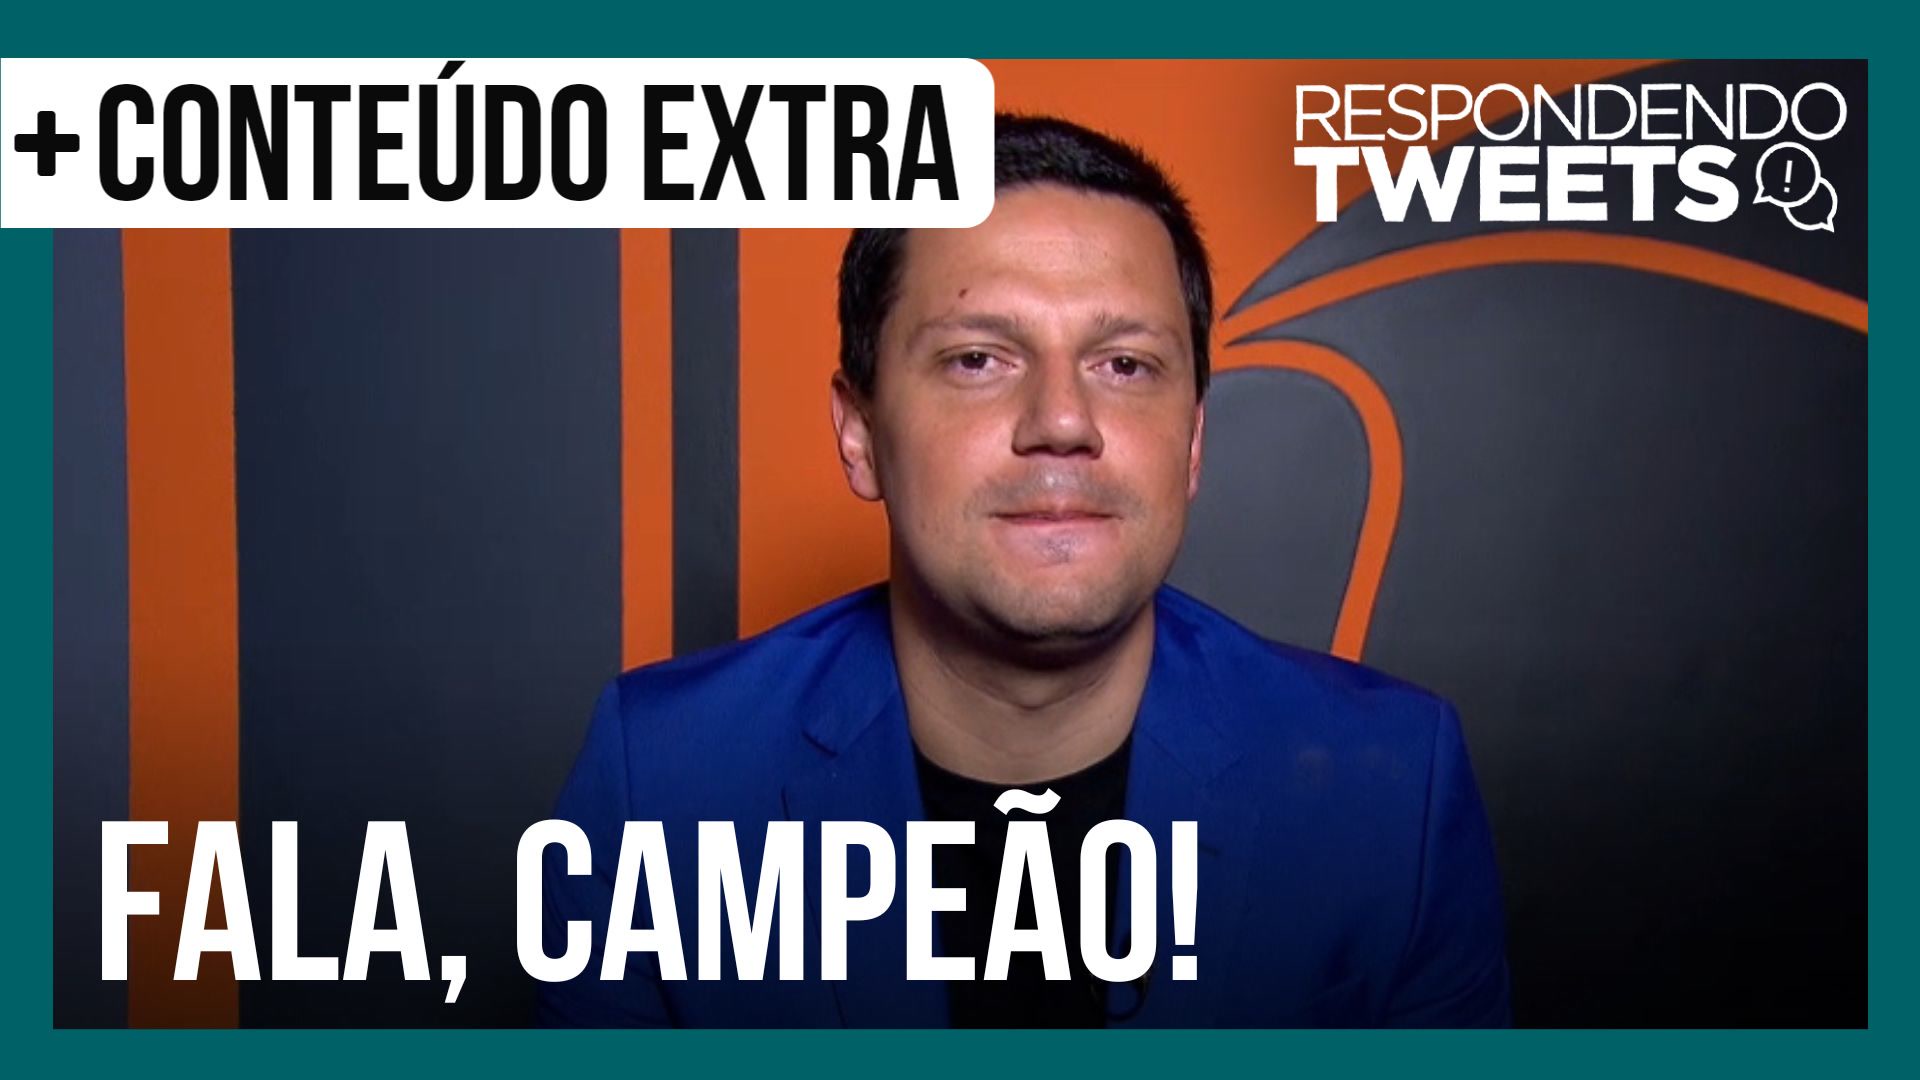 Vídeo: Thiago Servo rebate comentário de ter iludido Gyselle Soares | Respondendo Tweets